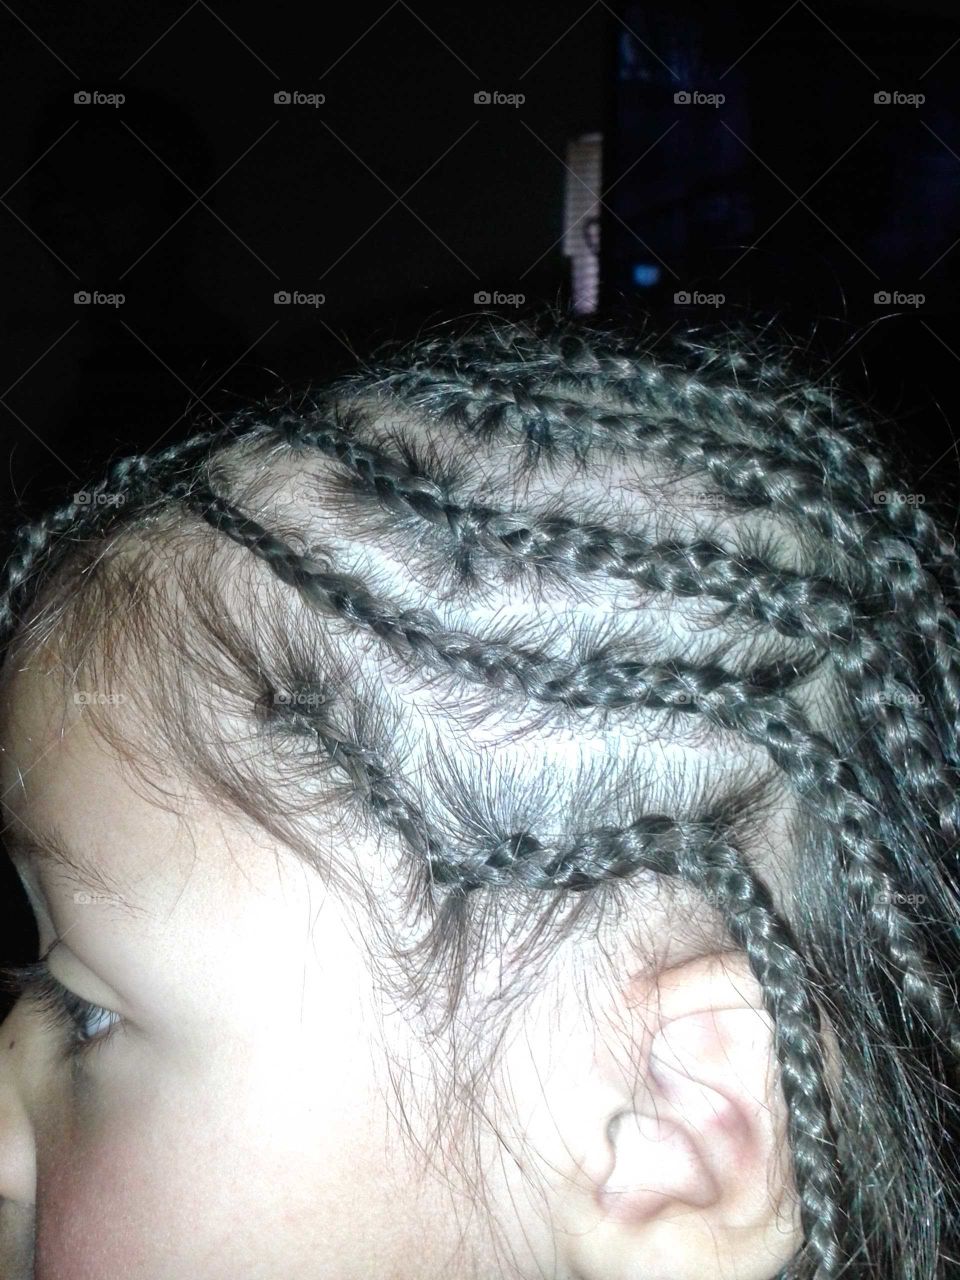 braids